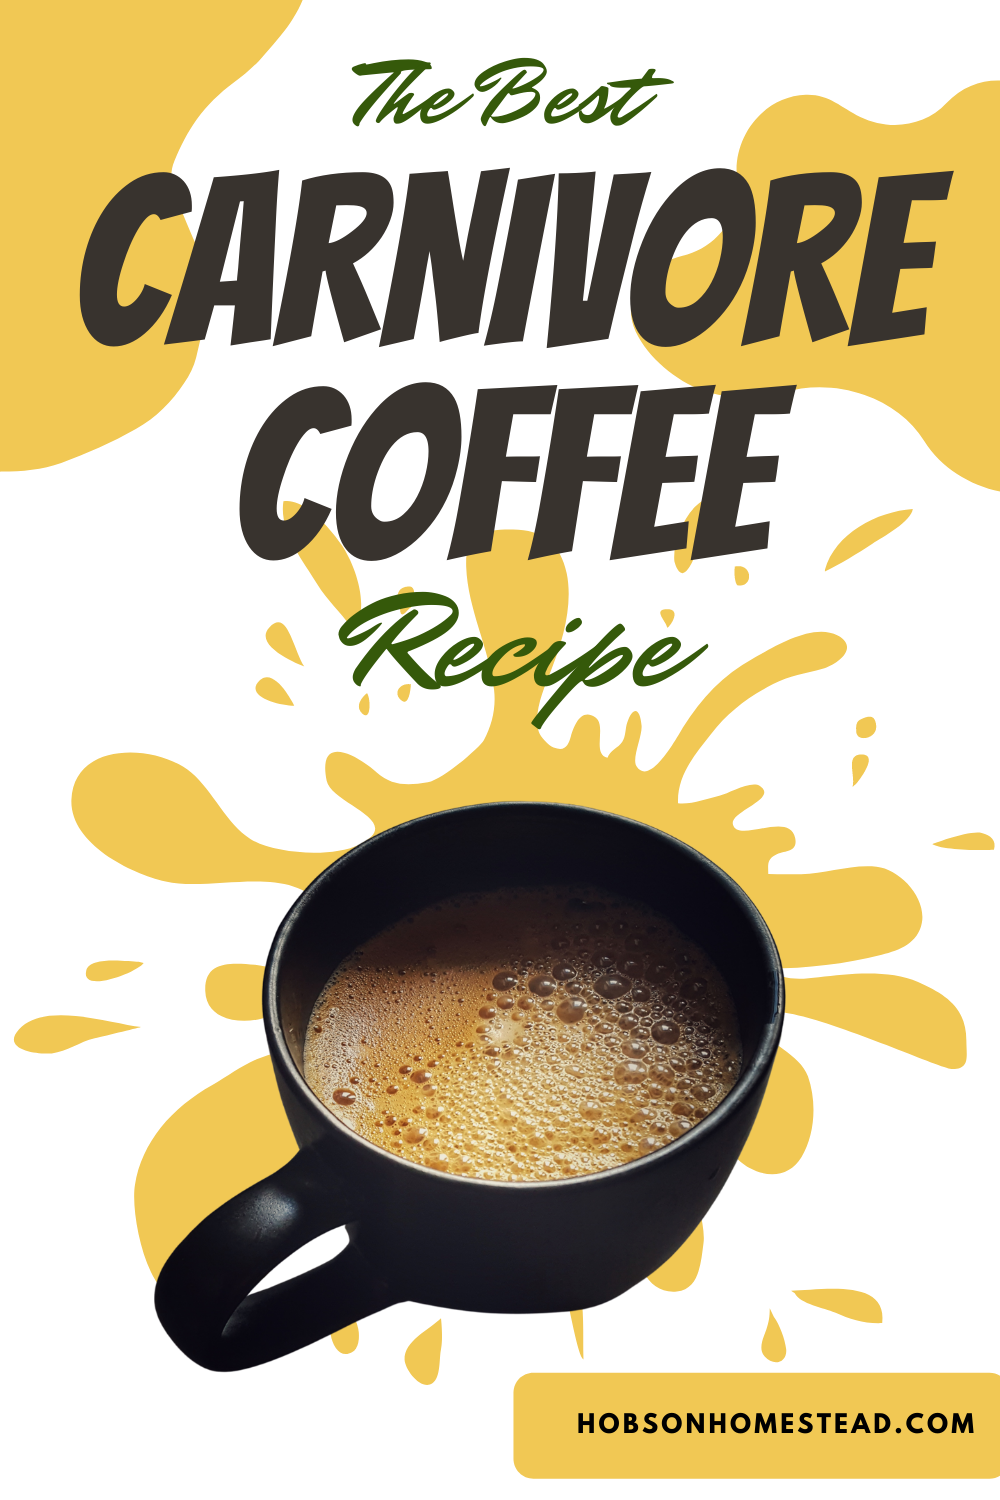 carnivore diet coffee recipe